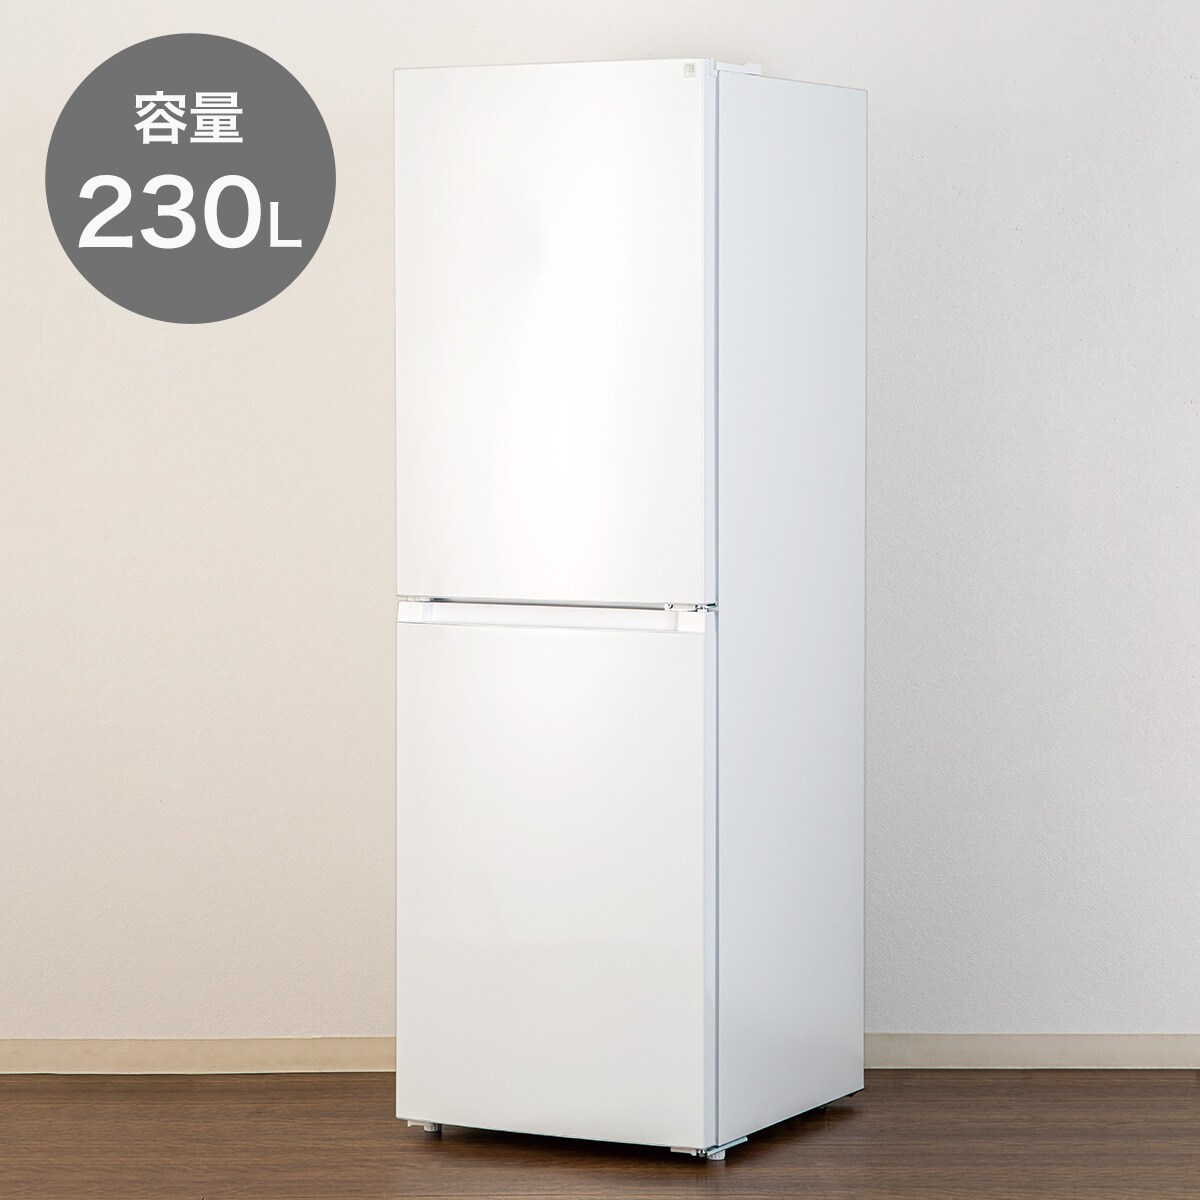 230L 奥まで使いやすい 2ドア冷凍冷蔵庫(NR-230F)通販 | ニトリネット 